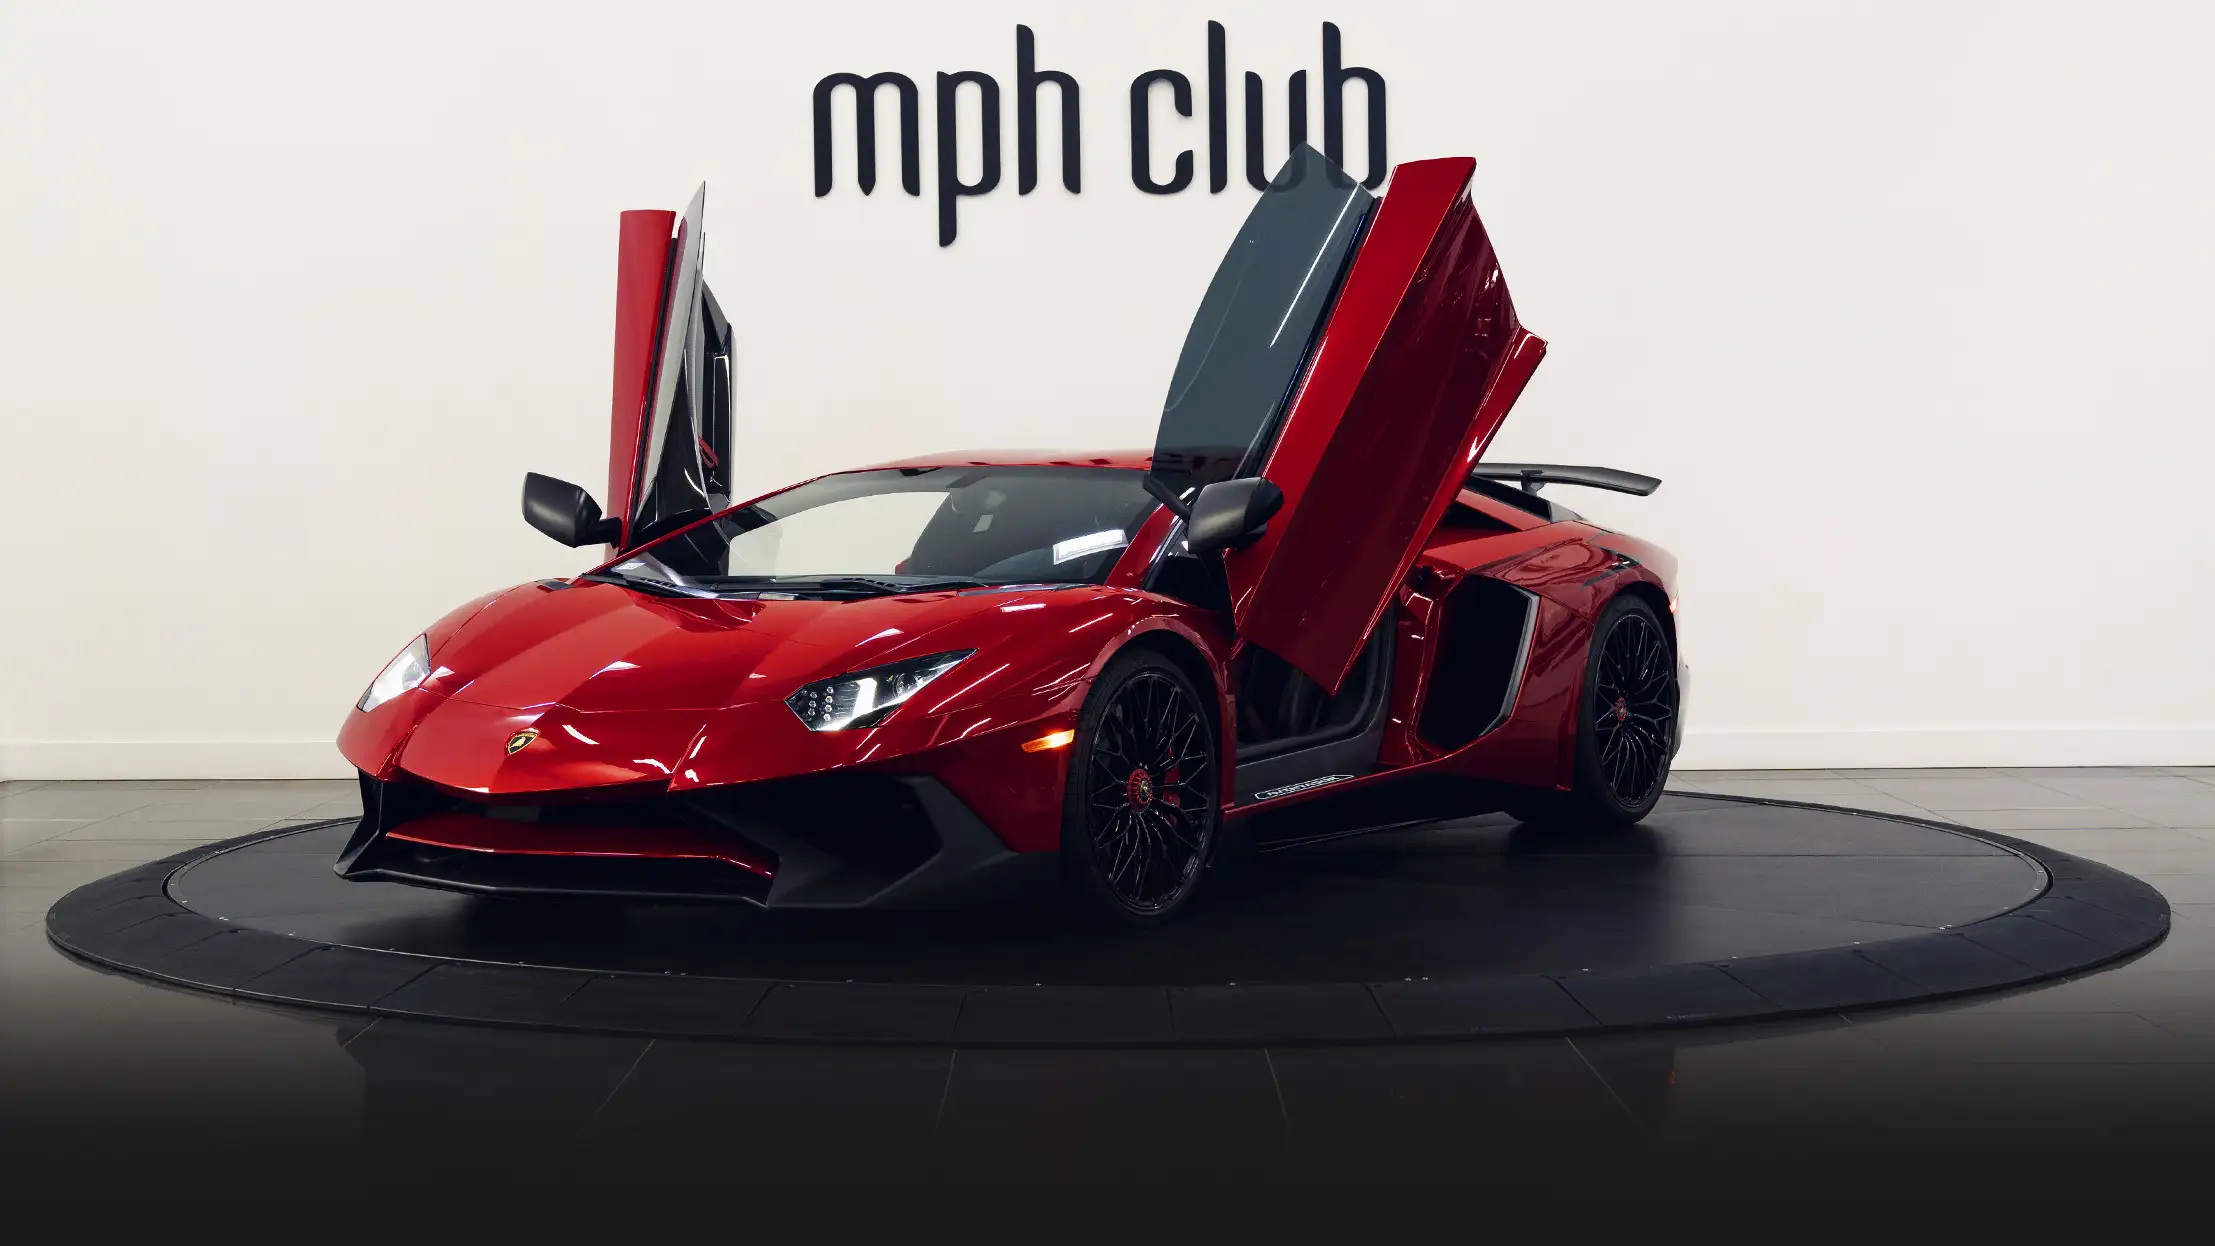 Red Lamborghini Aventador SV rental Miami profile view mph club